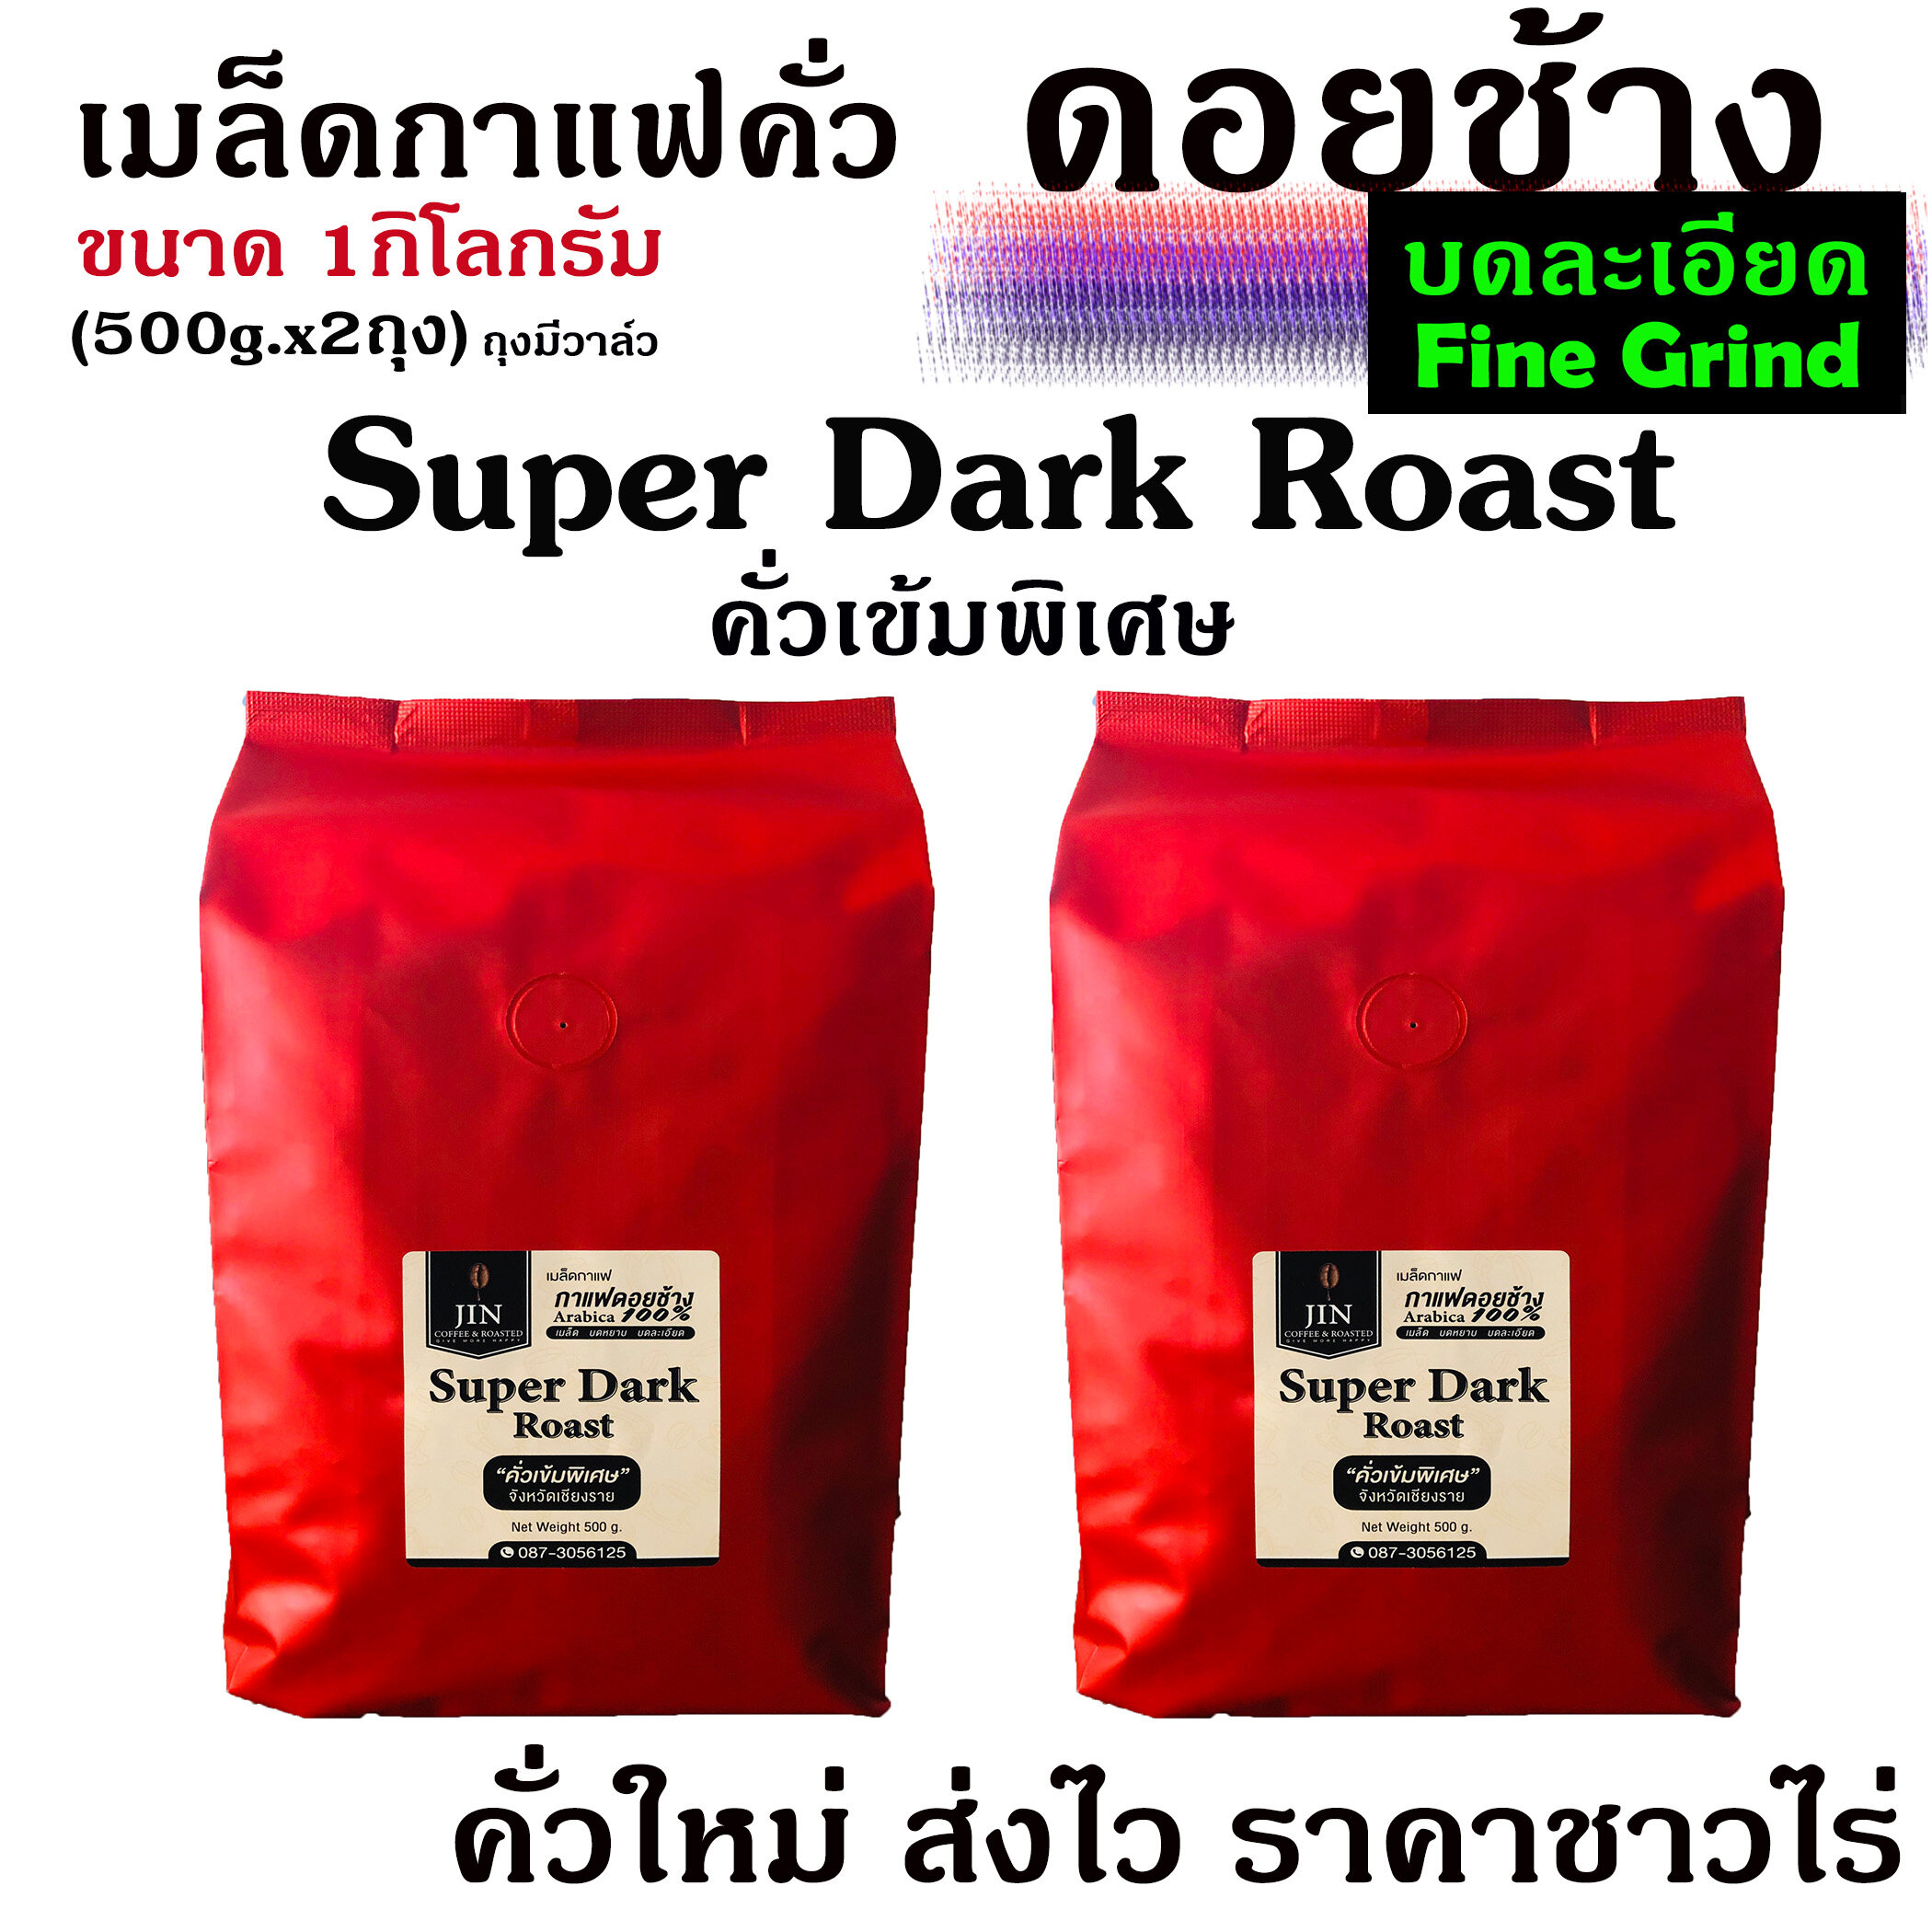 (บดละเอียด) กาแฟคั่วเข้มพิเศษ Super Dark Roast ขนาด 500g. x2ถุง จากดอยช้าง คั่วใหม่ทุกวัน ส่งฟรีทุกครั้ง